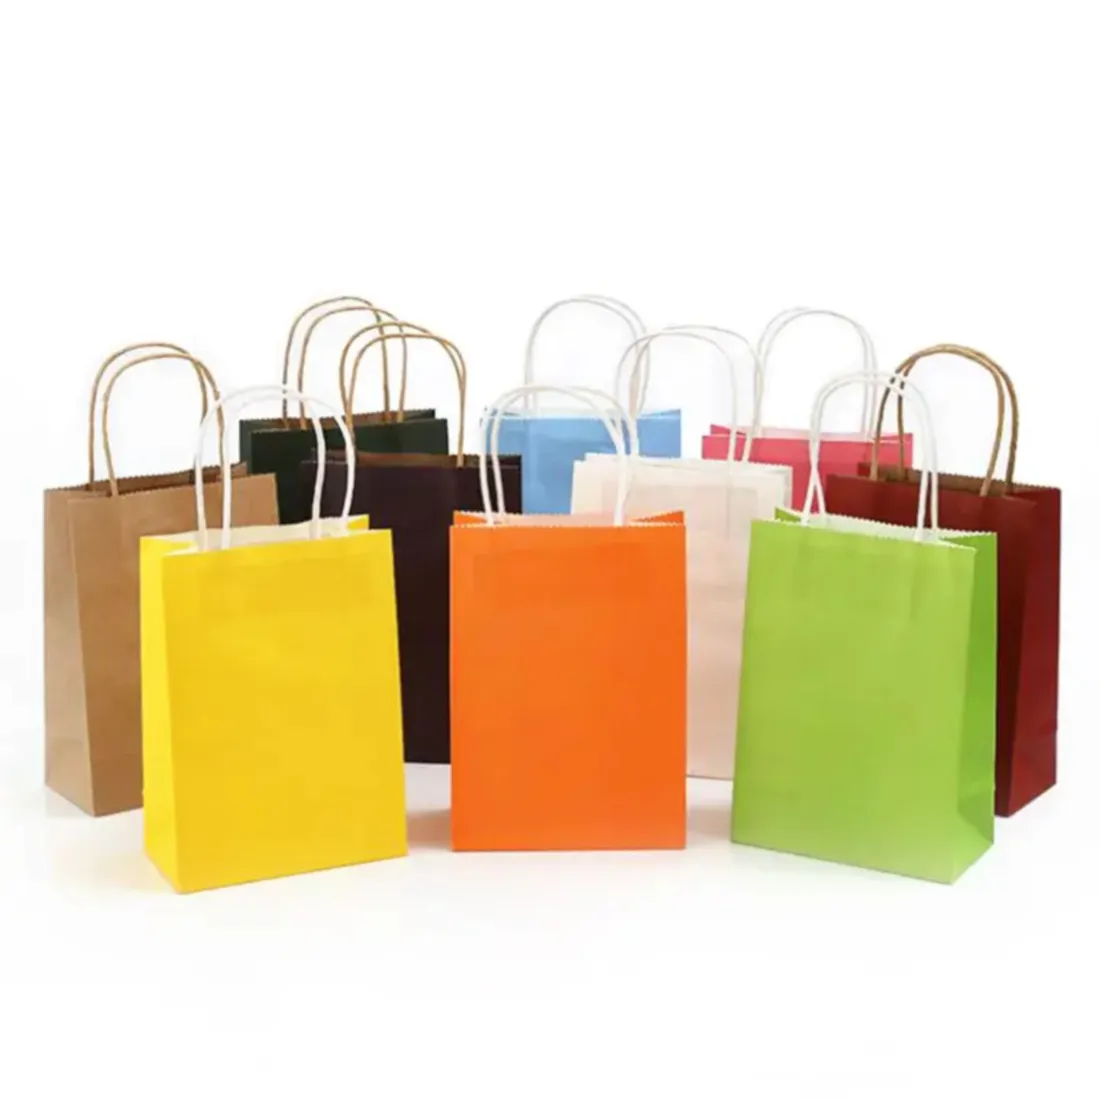 बेबी उपहार के लिए कम कीमत वाले खुदरा रंगीन पेपर शॉपिंग बैग